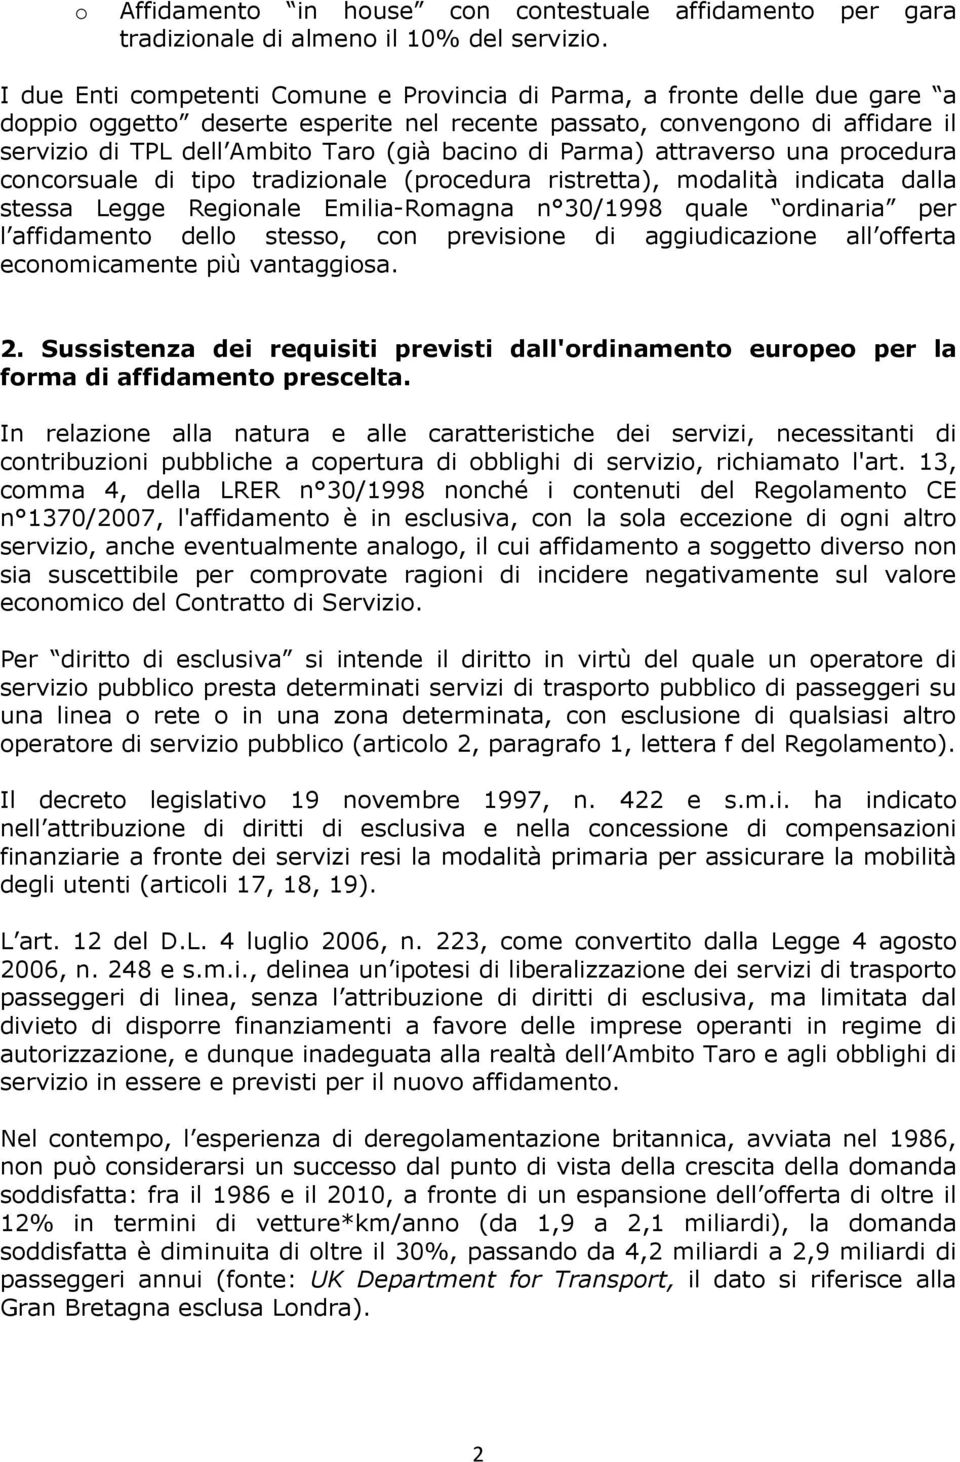 bacino di Parma) attraverso una procedura concorsuale di tipo tradizionale (procedura ristretta), modalità indicata dalla stessa Legge Regionale Emilia-Romagna n 30/1998 quale ordinaria per l